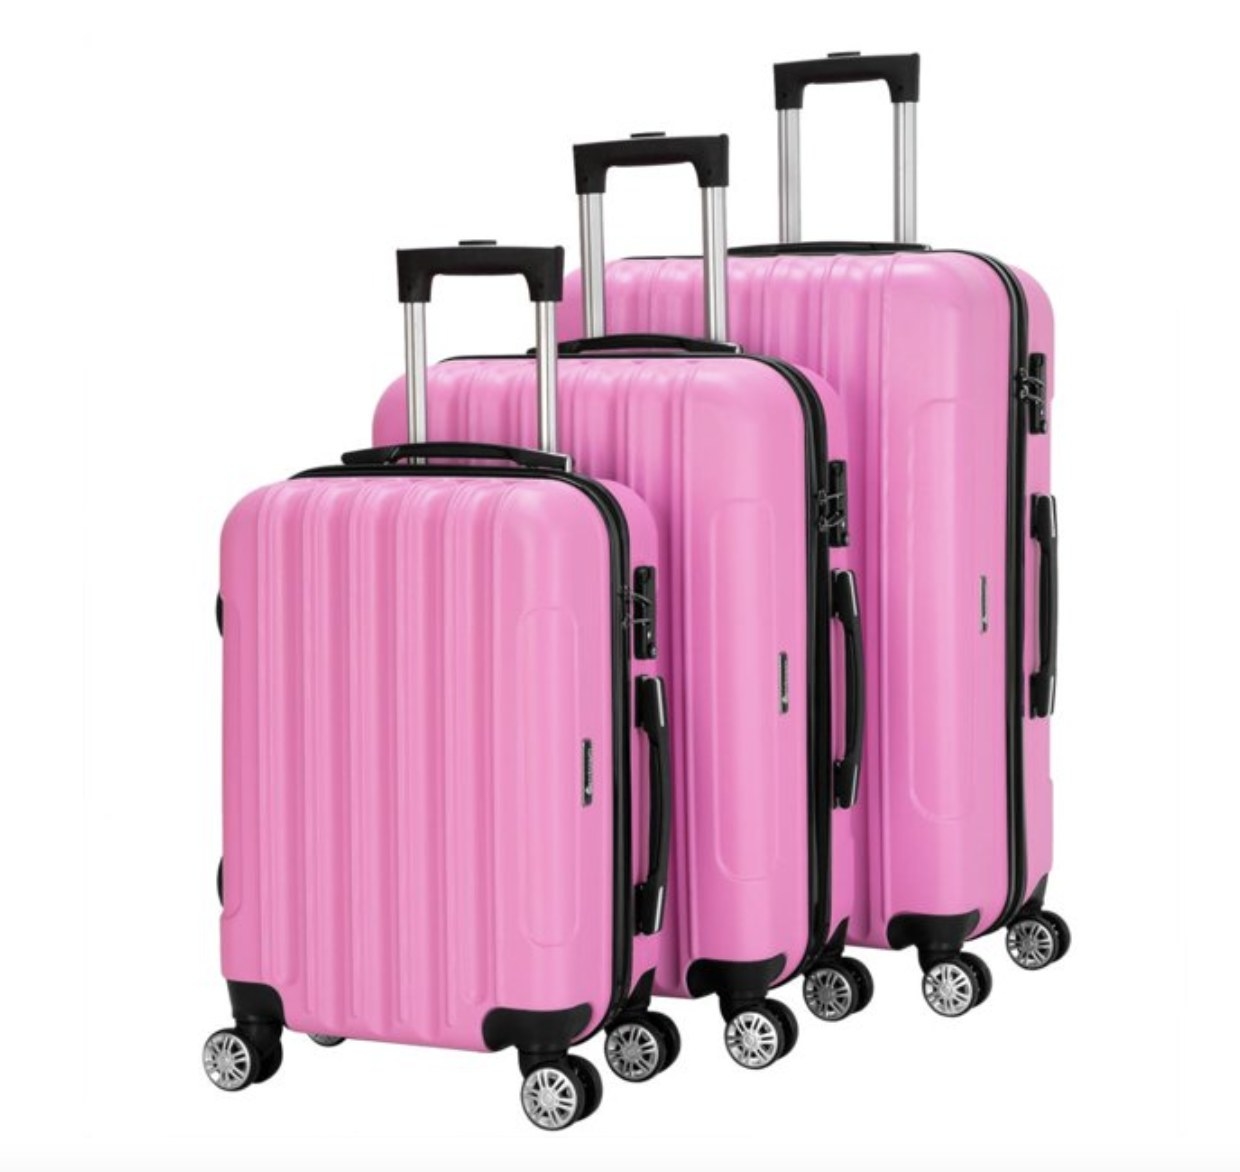 A three piece luggage set